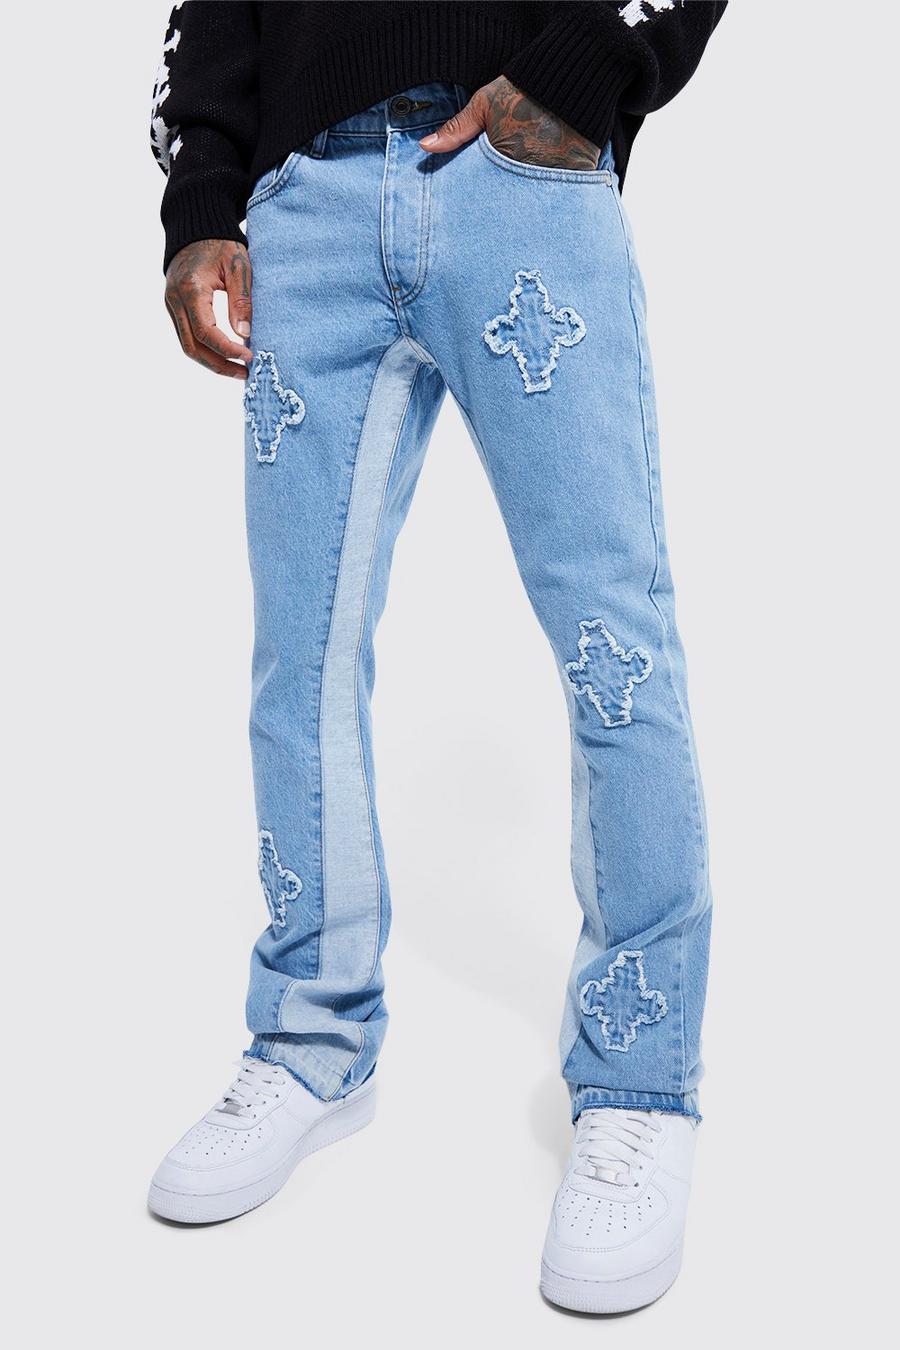 כחול בהיר ג'ינס מתרחב בגזרה צרה מבד קשיח עם פאנלים